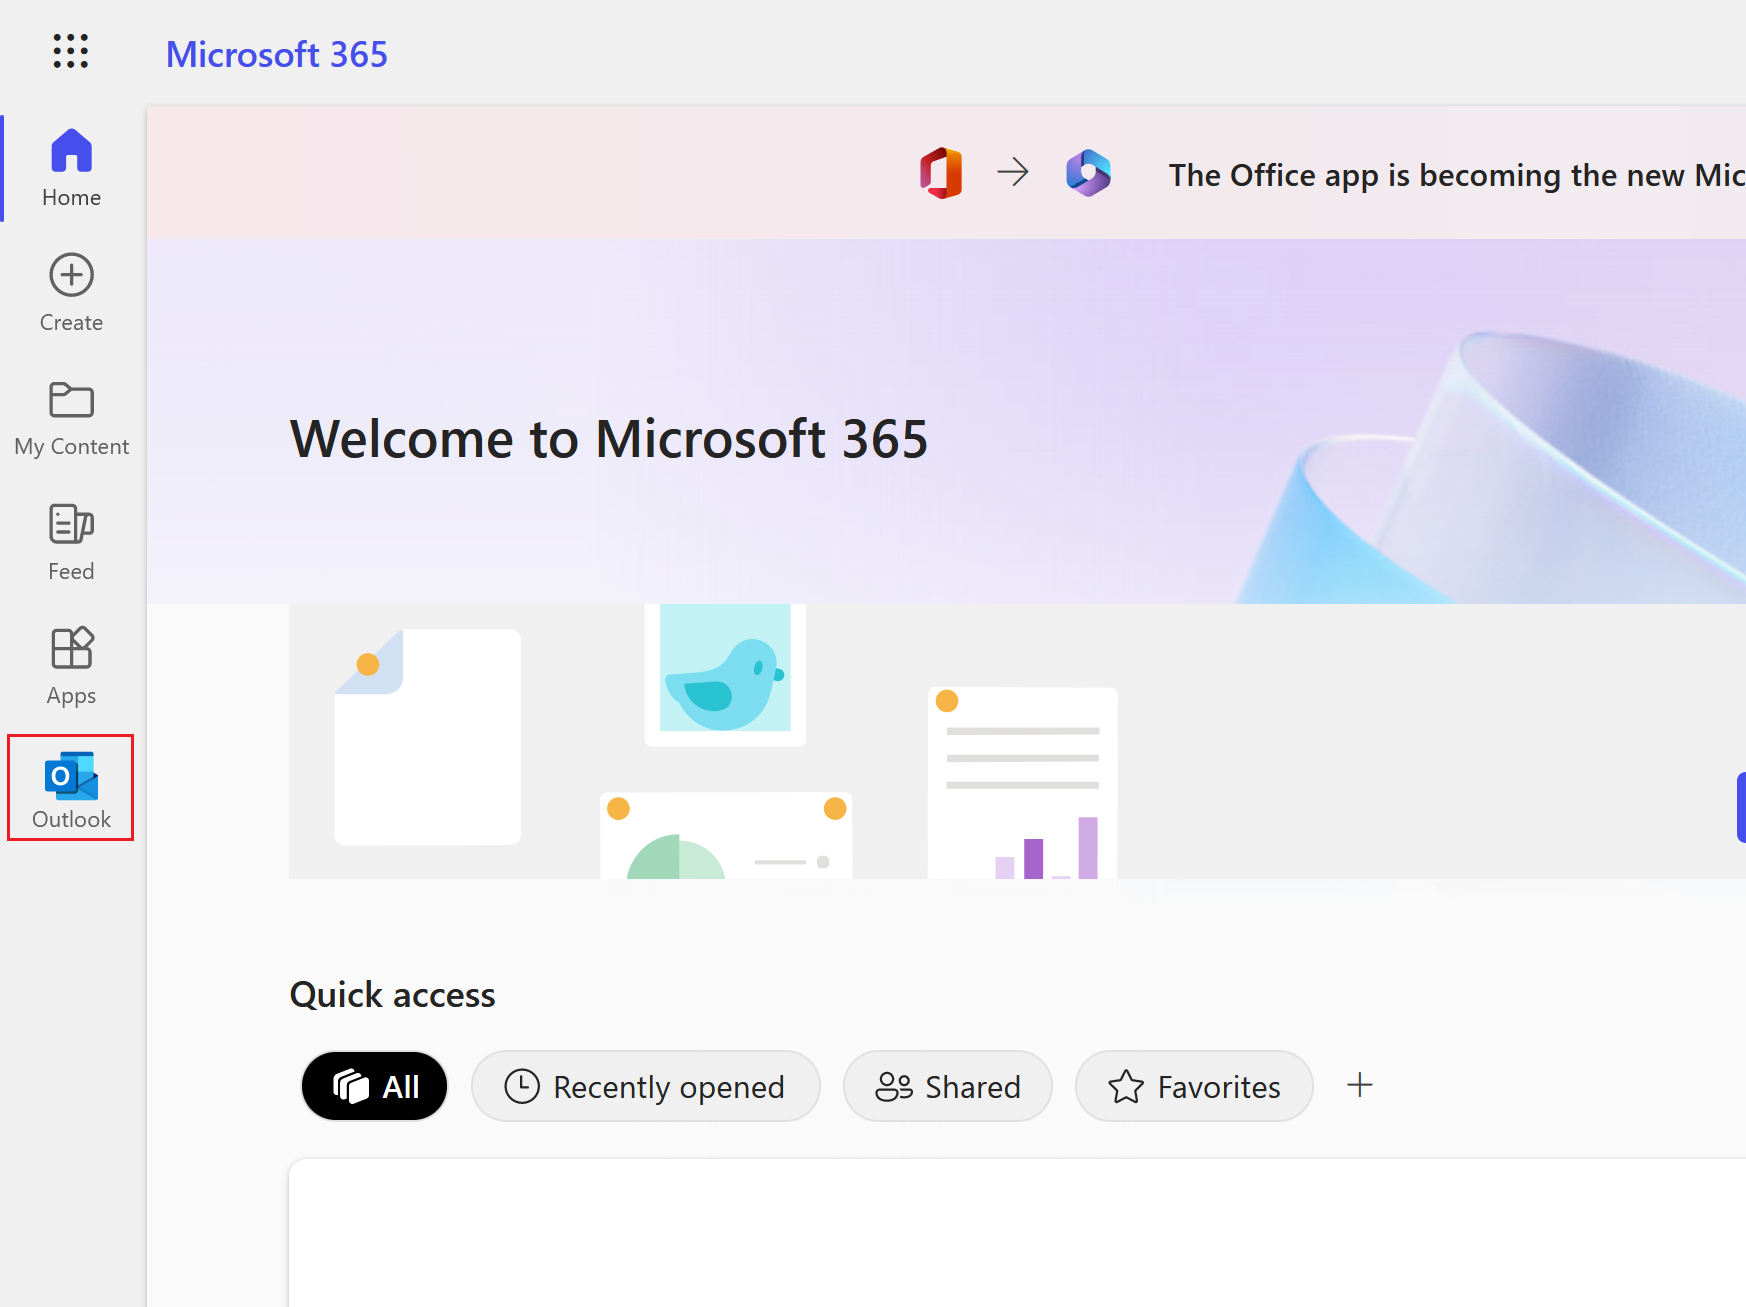 sélectionnez l'icône Outlook pour ouvrir votre boîte de réception